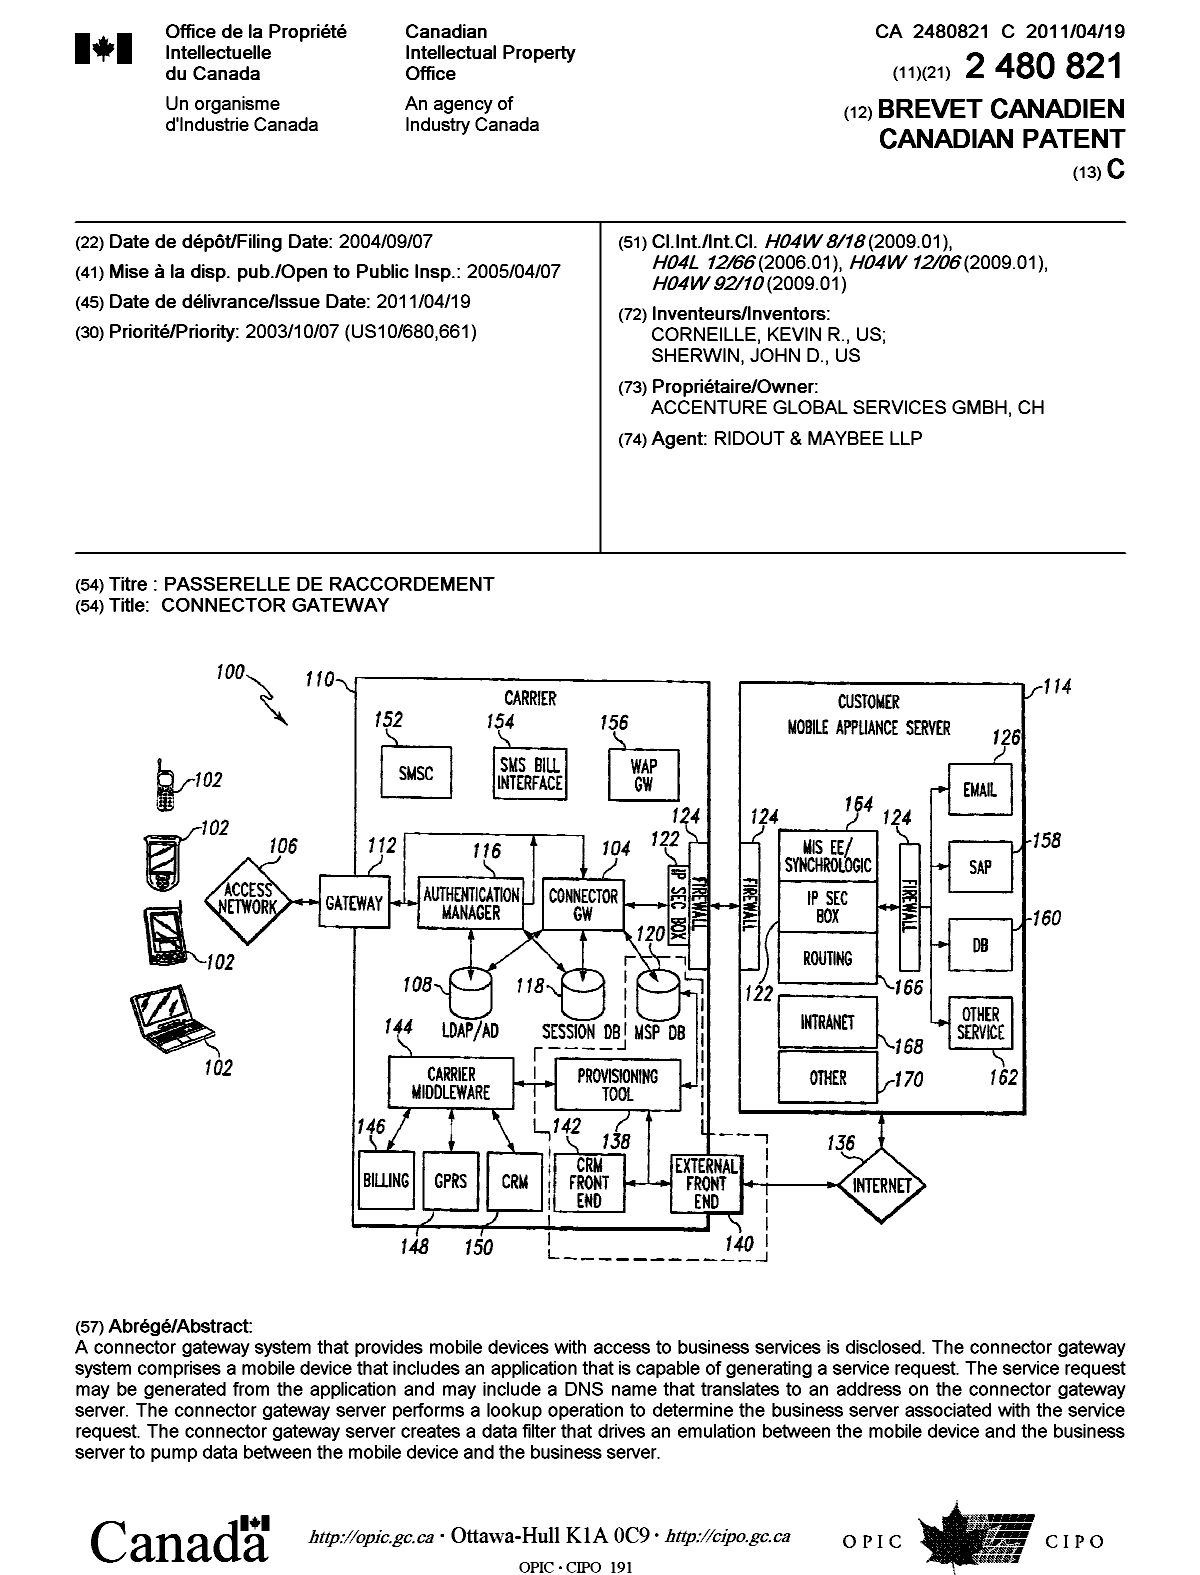 Document de brevet canadien 2480821. Page couverture 20101221. Image 1 de 1